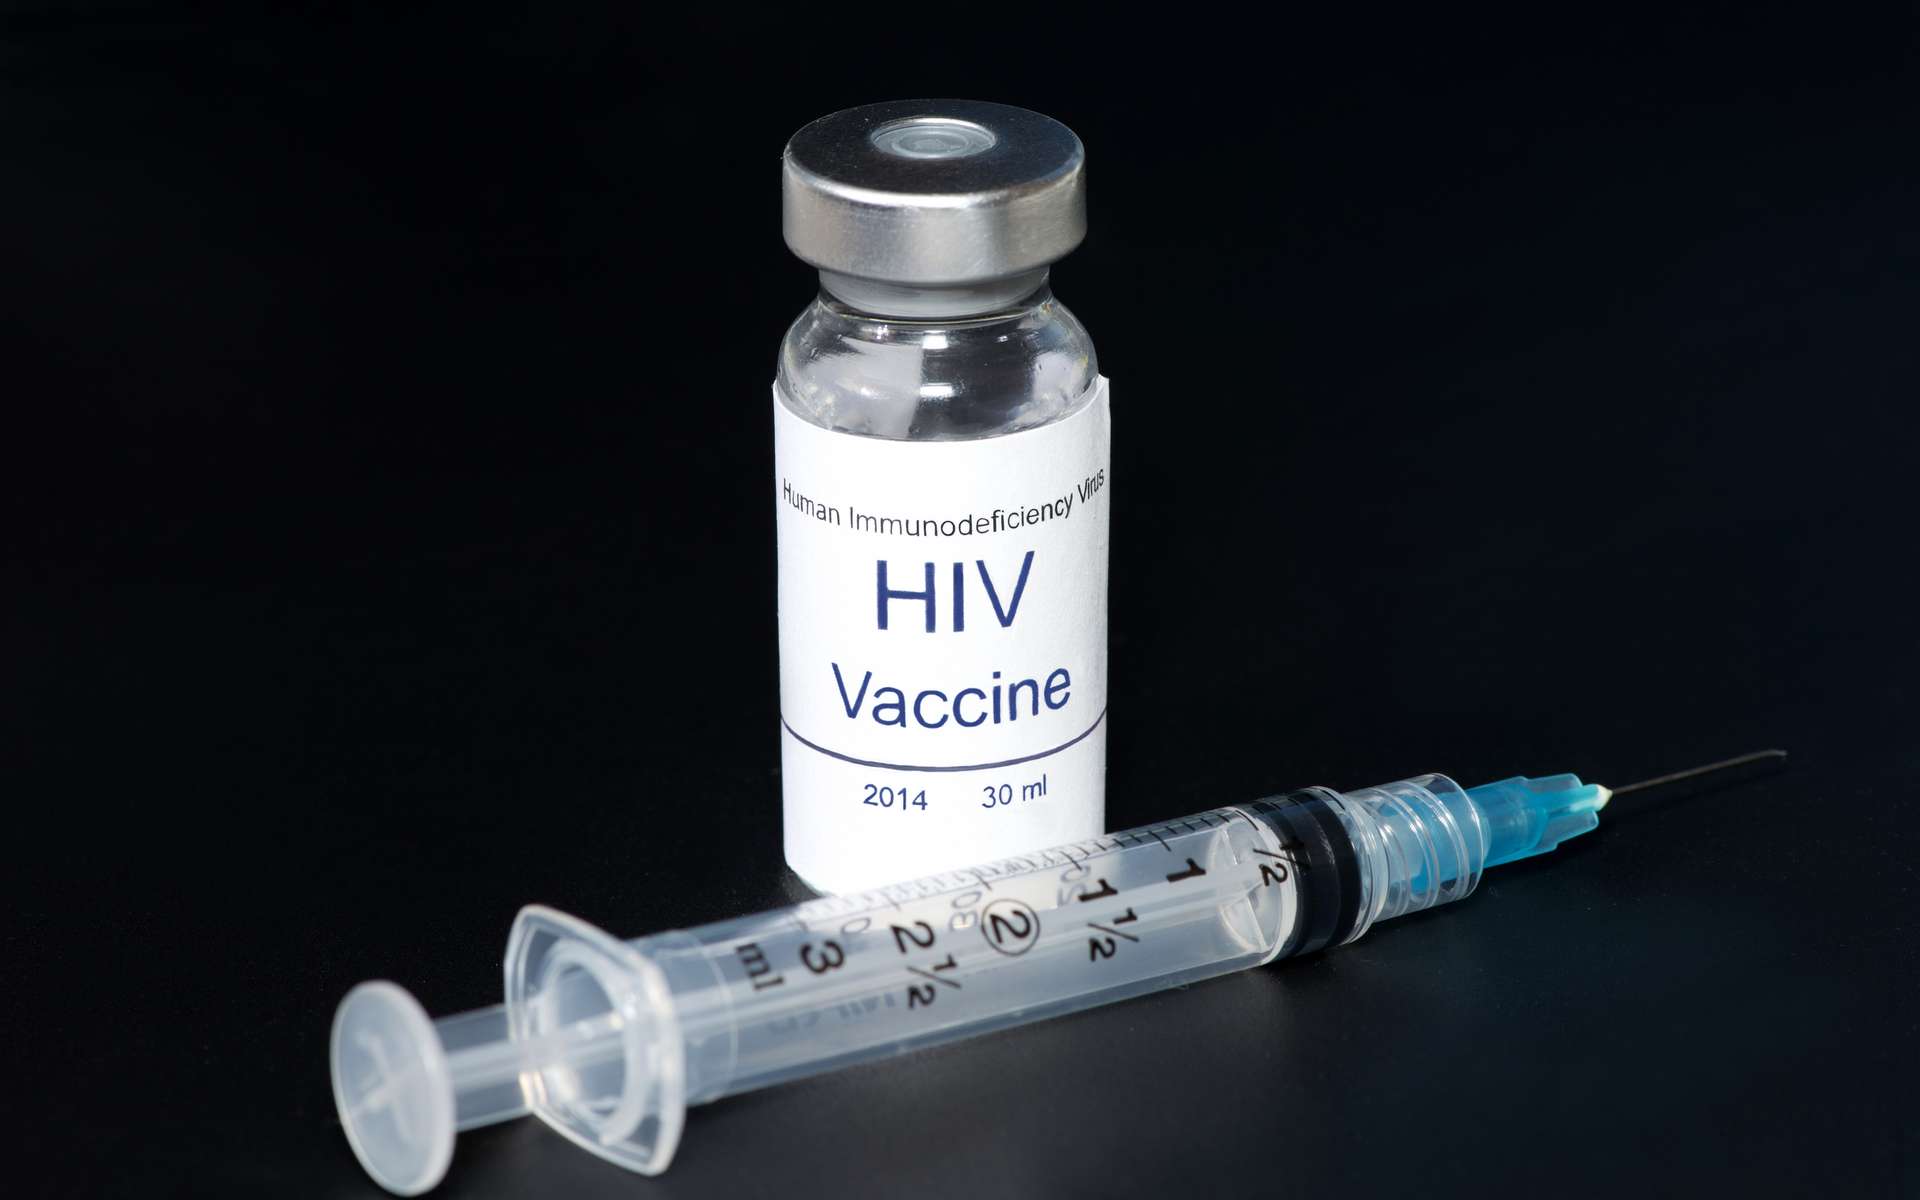 Malgré 35 ans de recherche, aucun vaccin contre le Sida n'est sur le marché. © Sherry Young, Adobe Stock